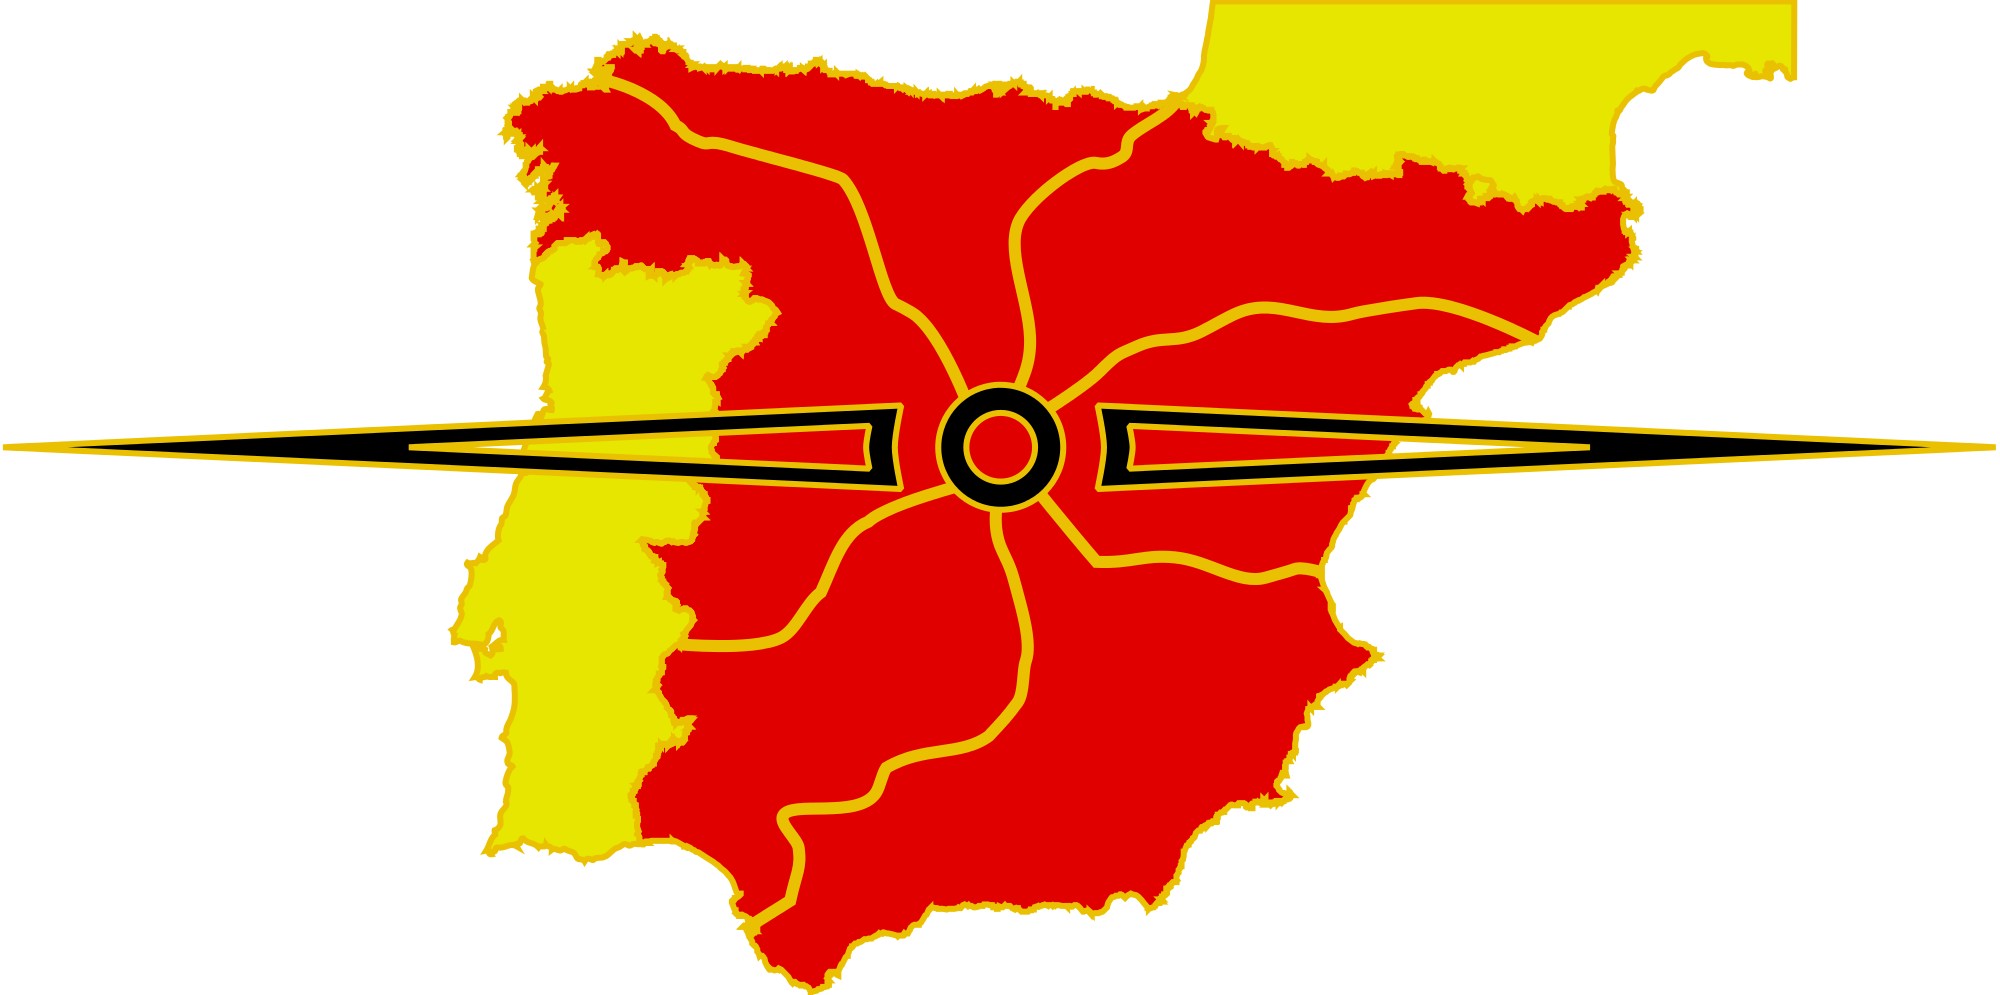 Las carreteras radiales de España - Las 6 grandes vías 🛣️